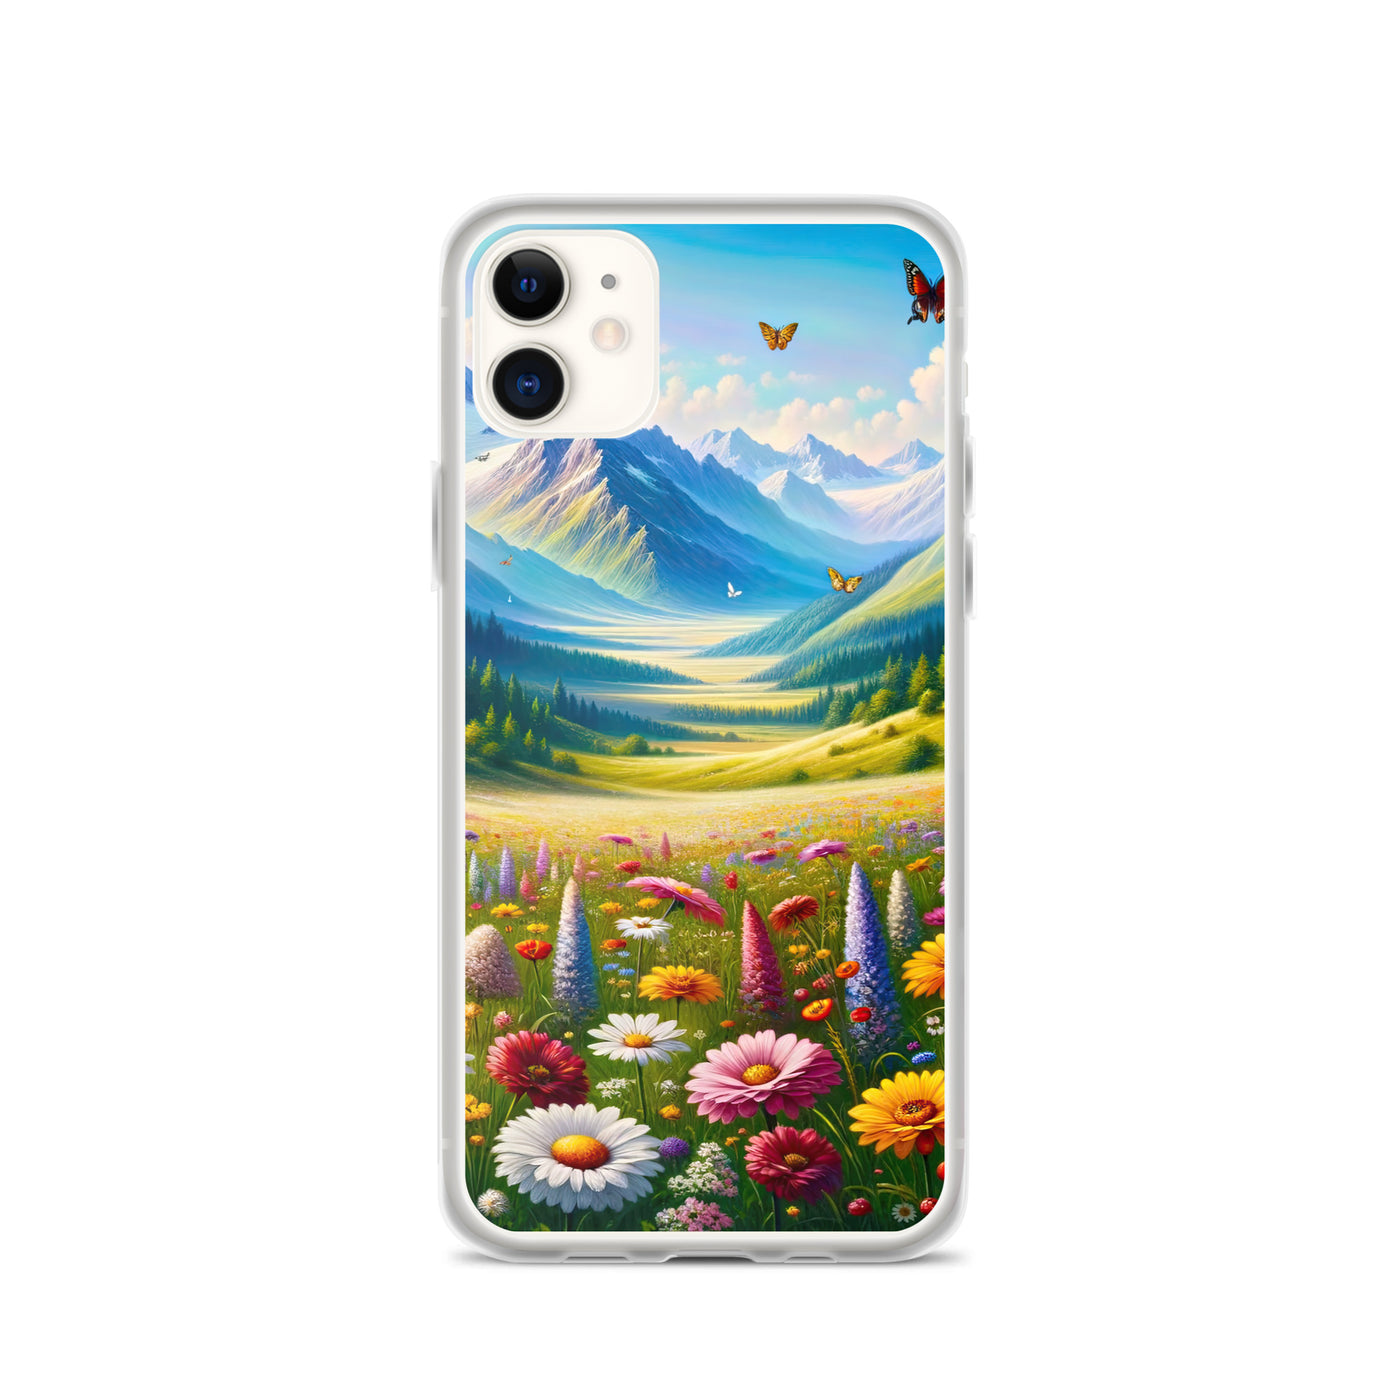 Ölgemälde einer ruhigen Almwiese, Oase mit bunter Wildblumenpracht - iPhone Schutzhülle (durchsichtig) camping xxx yyy zzz iPhone 11